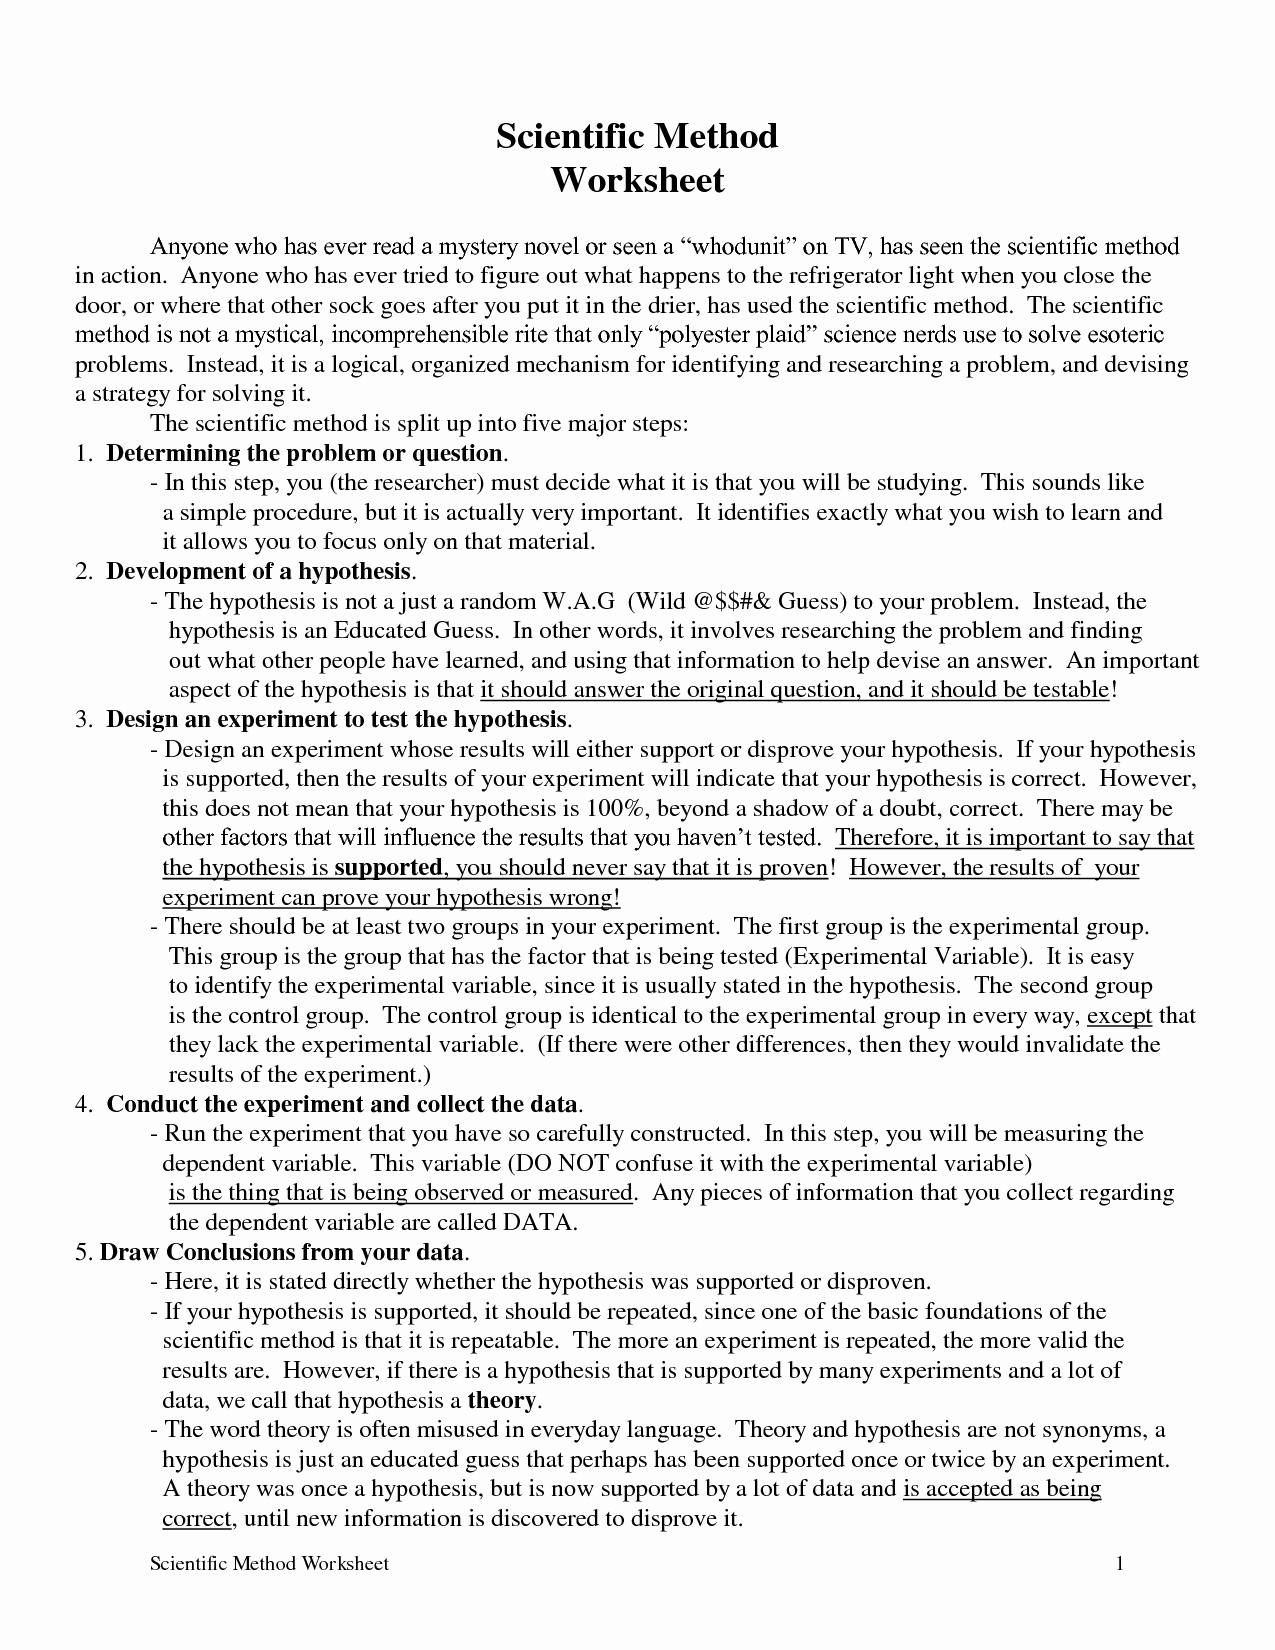 Scientific Method Review Worksheet Elegant 17 Best Of Middle School Science Worksheets Pdf